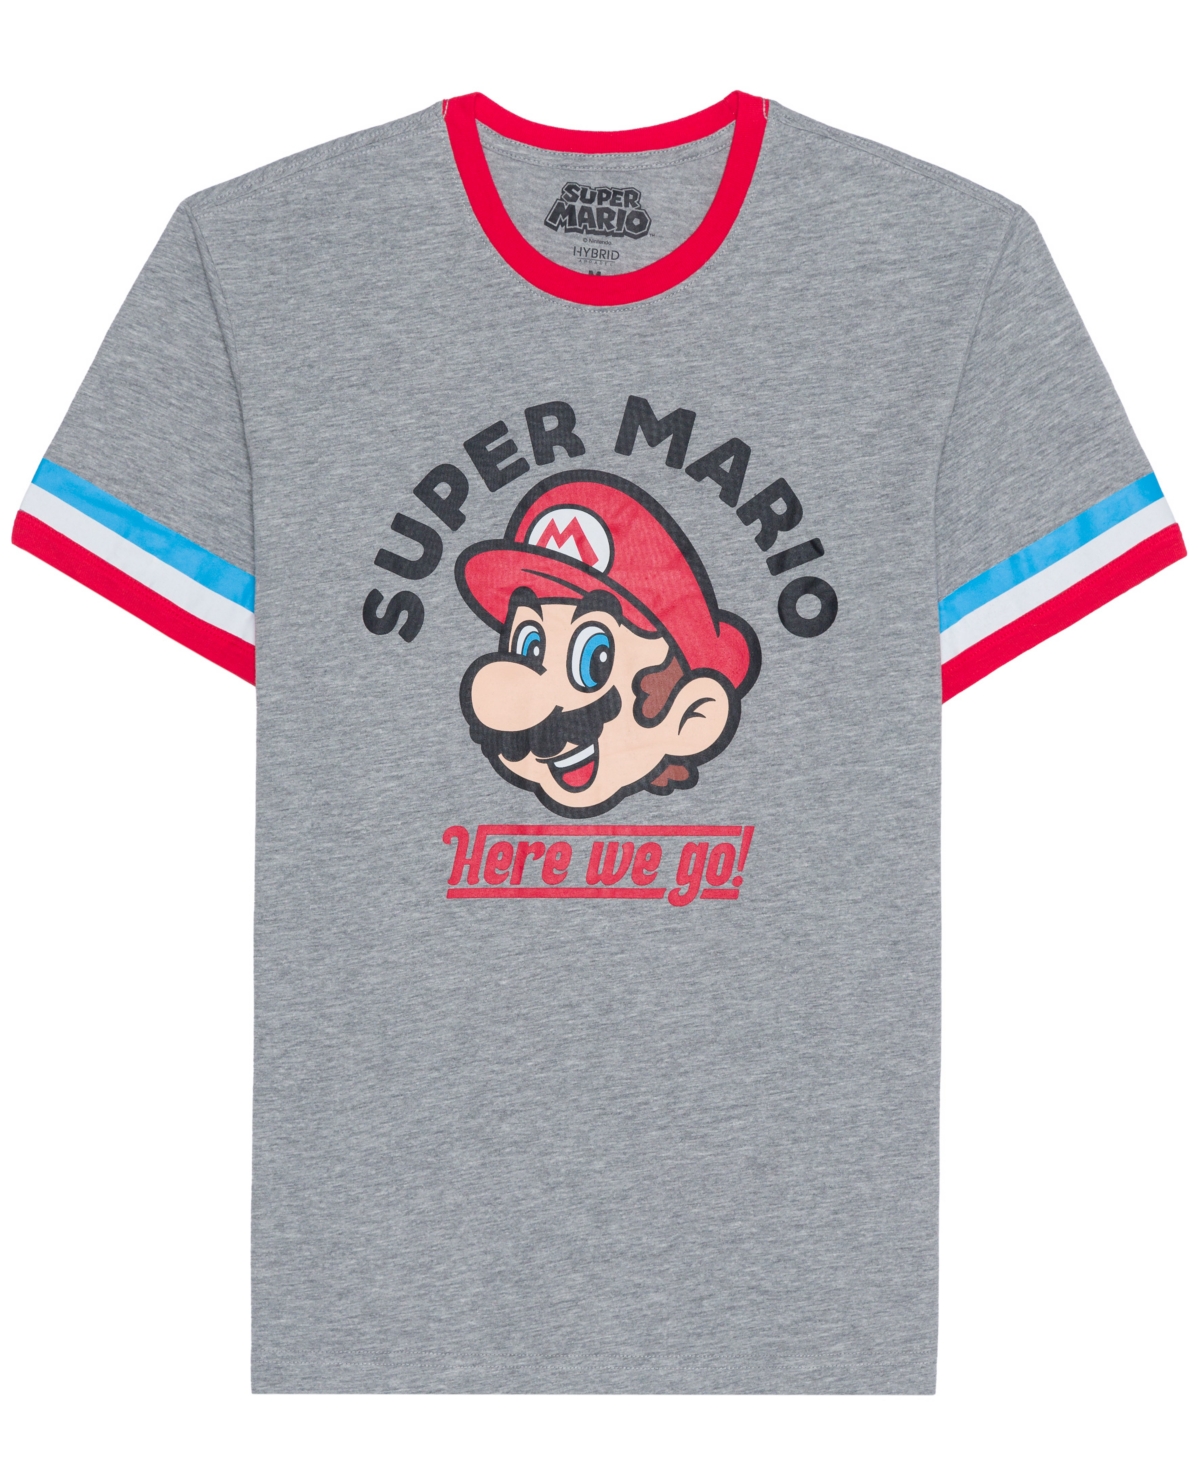 Men's Super Mario Short Sleeve Ringer T-shirt - Gray